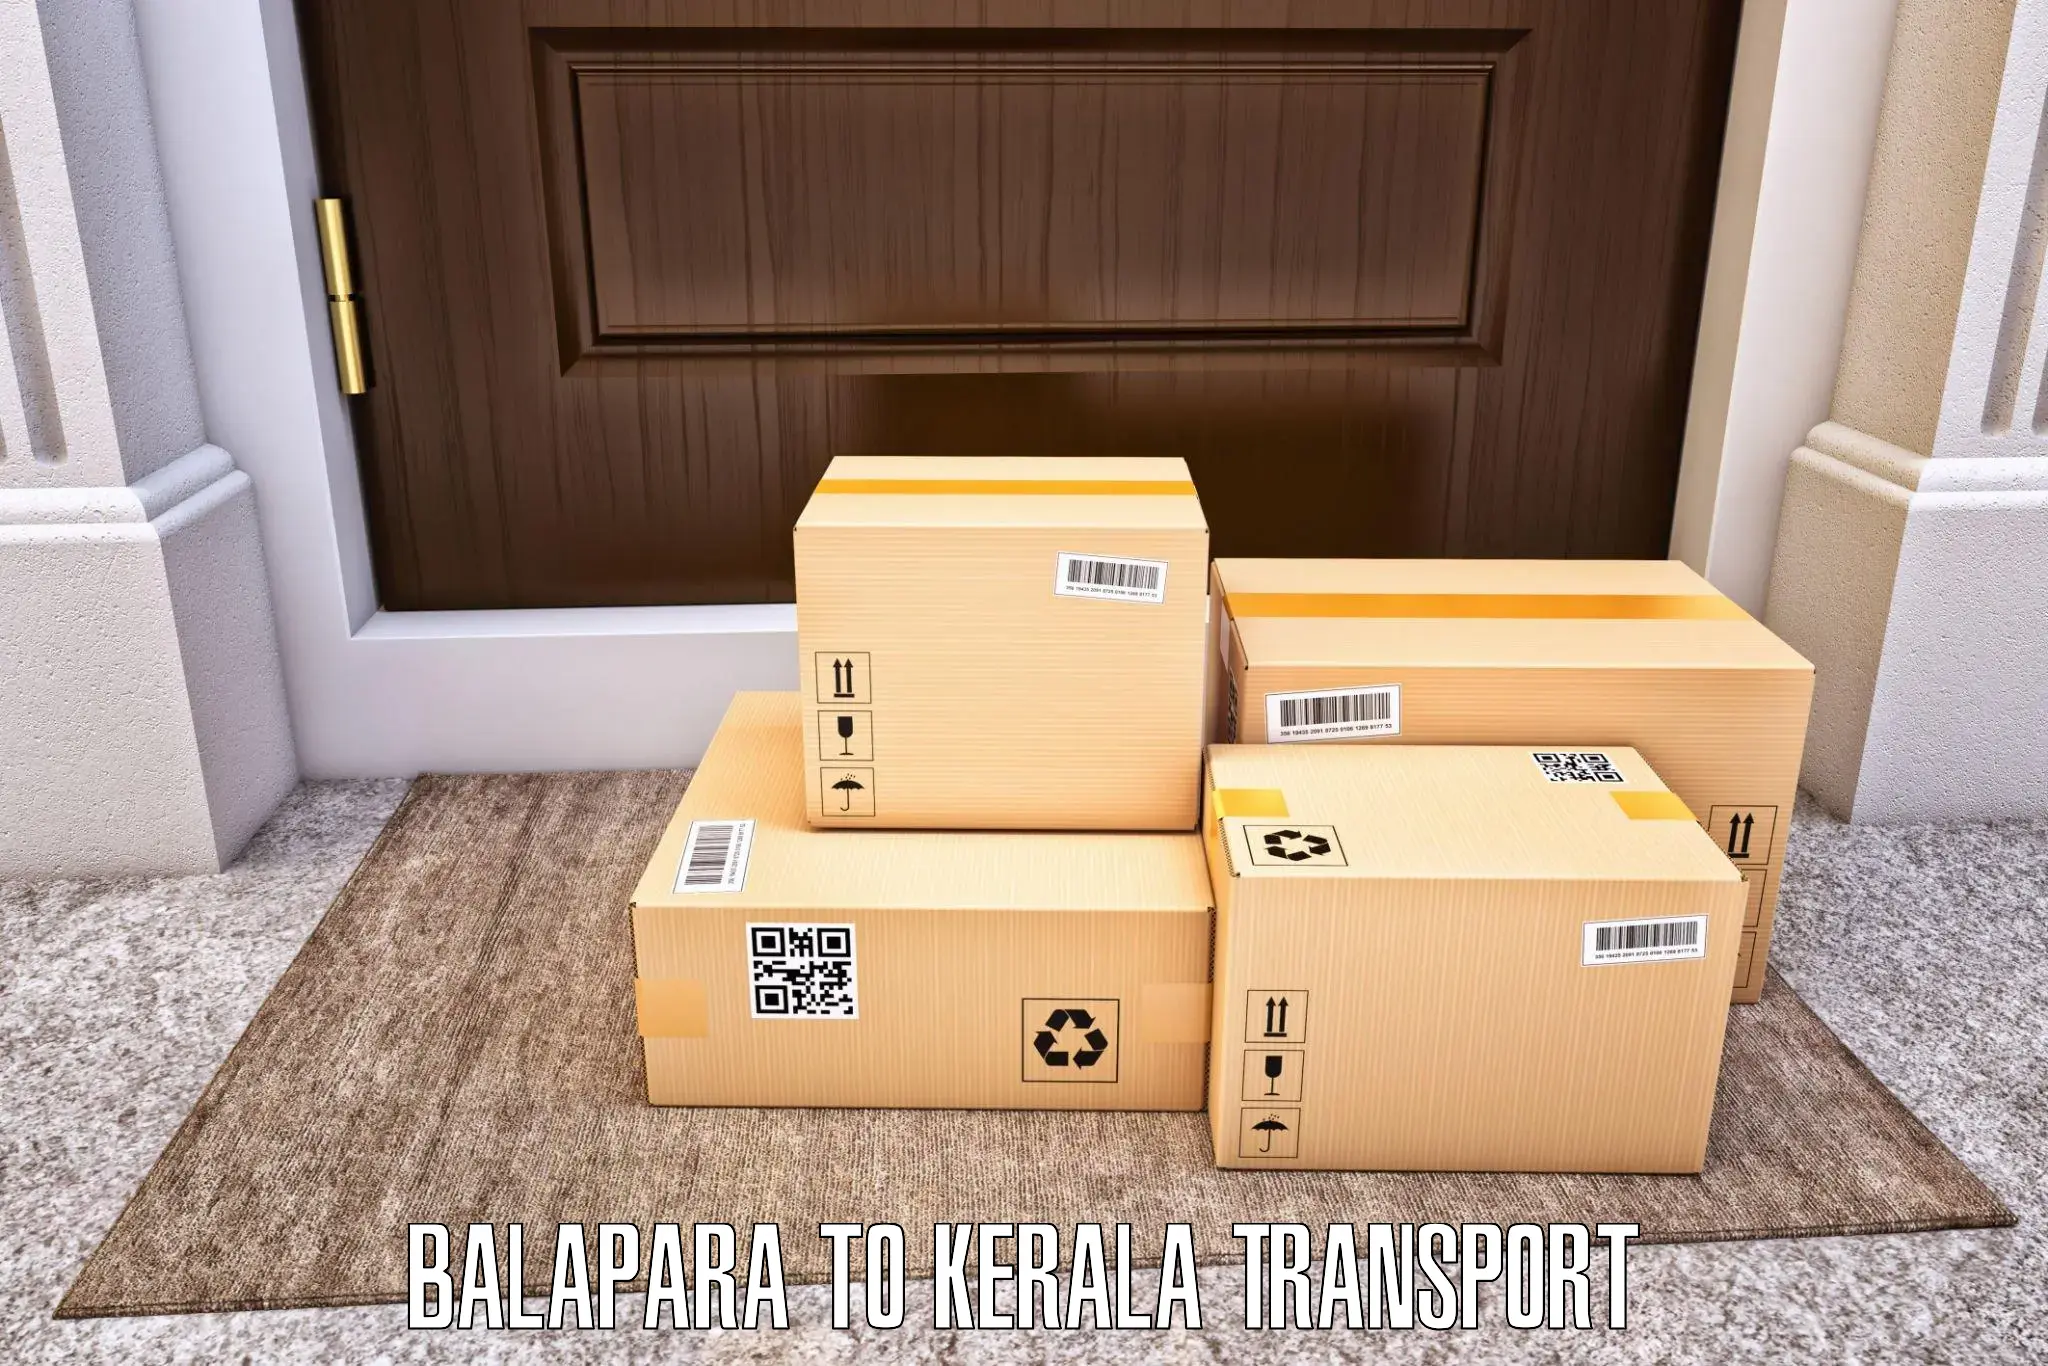 Transportation services Balapara to Thiruvananthapuram